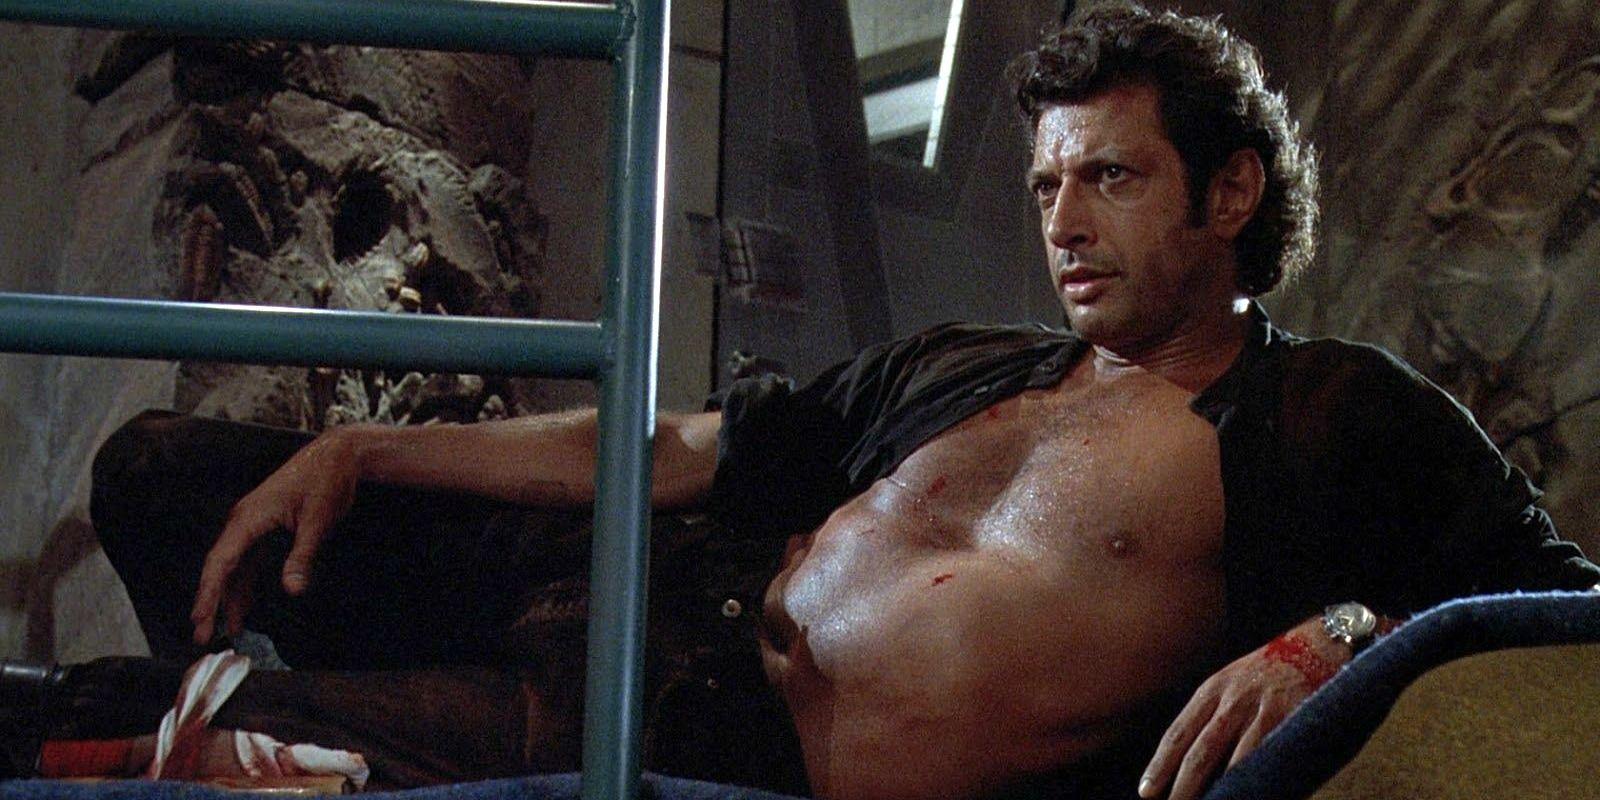 Ingen tampas med ilskna skräcködlor som Goldblum. Här i ”Jurassic Park” från 1993 